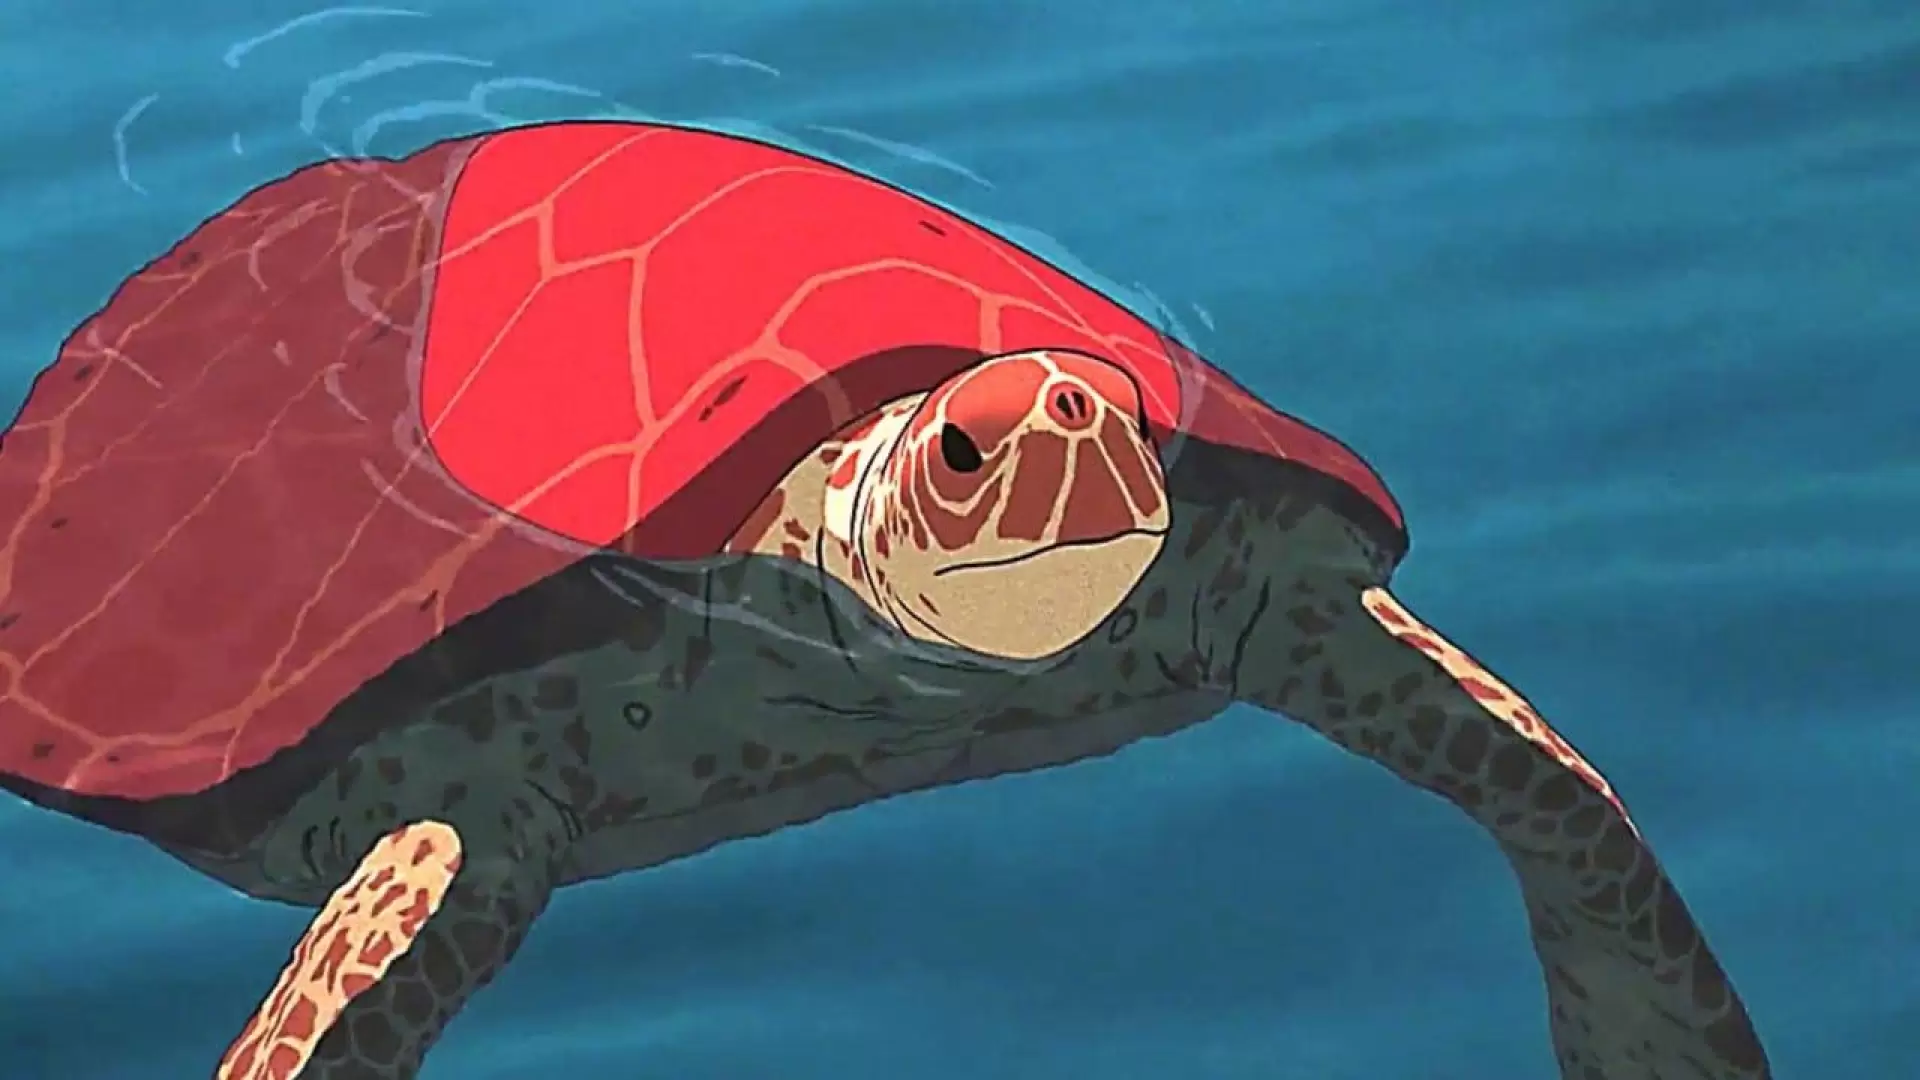 دانلود انیمیشن The Red Turtle 2016 (لاکپشت قرمز) با تماشای آنلاین